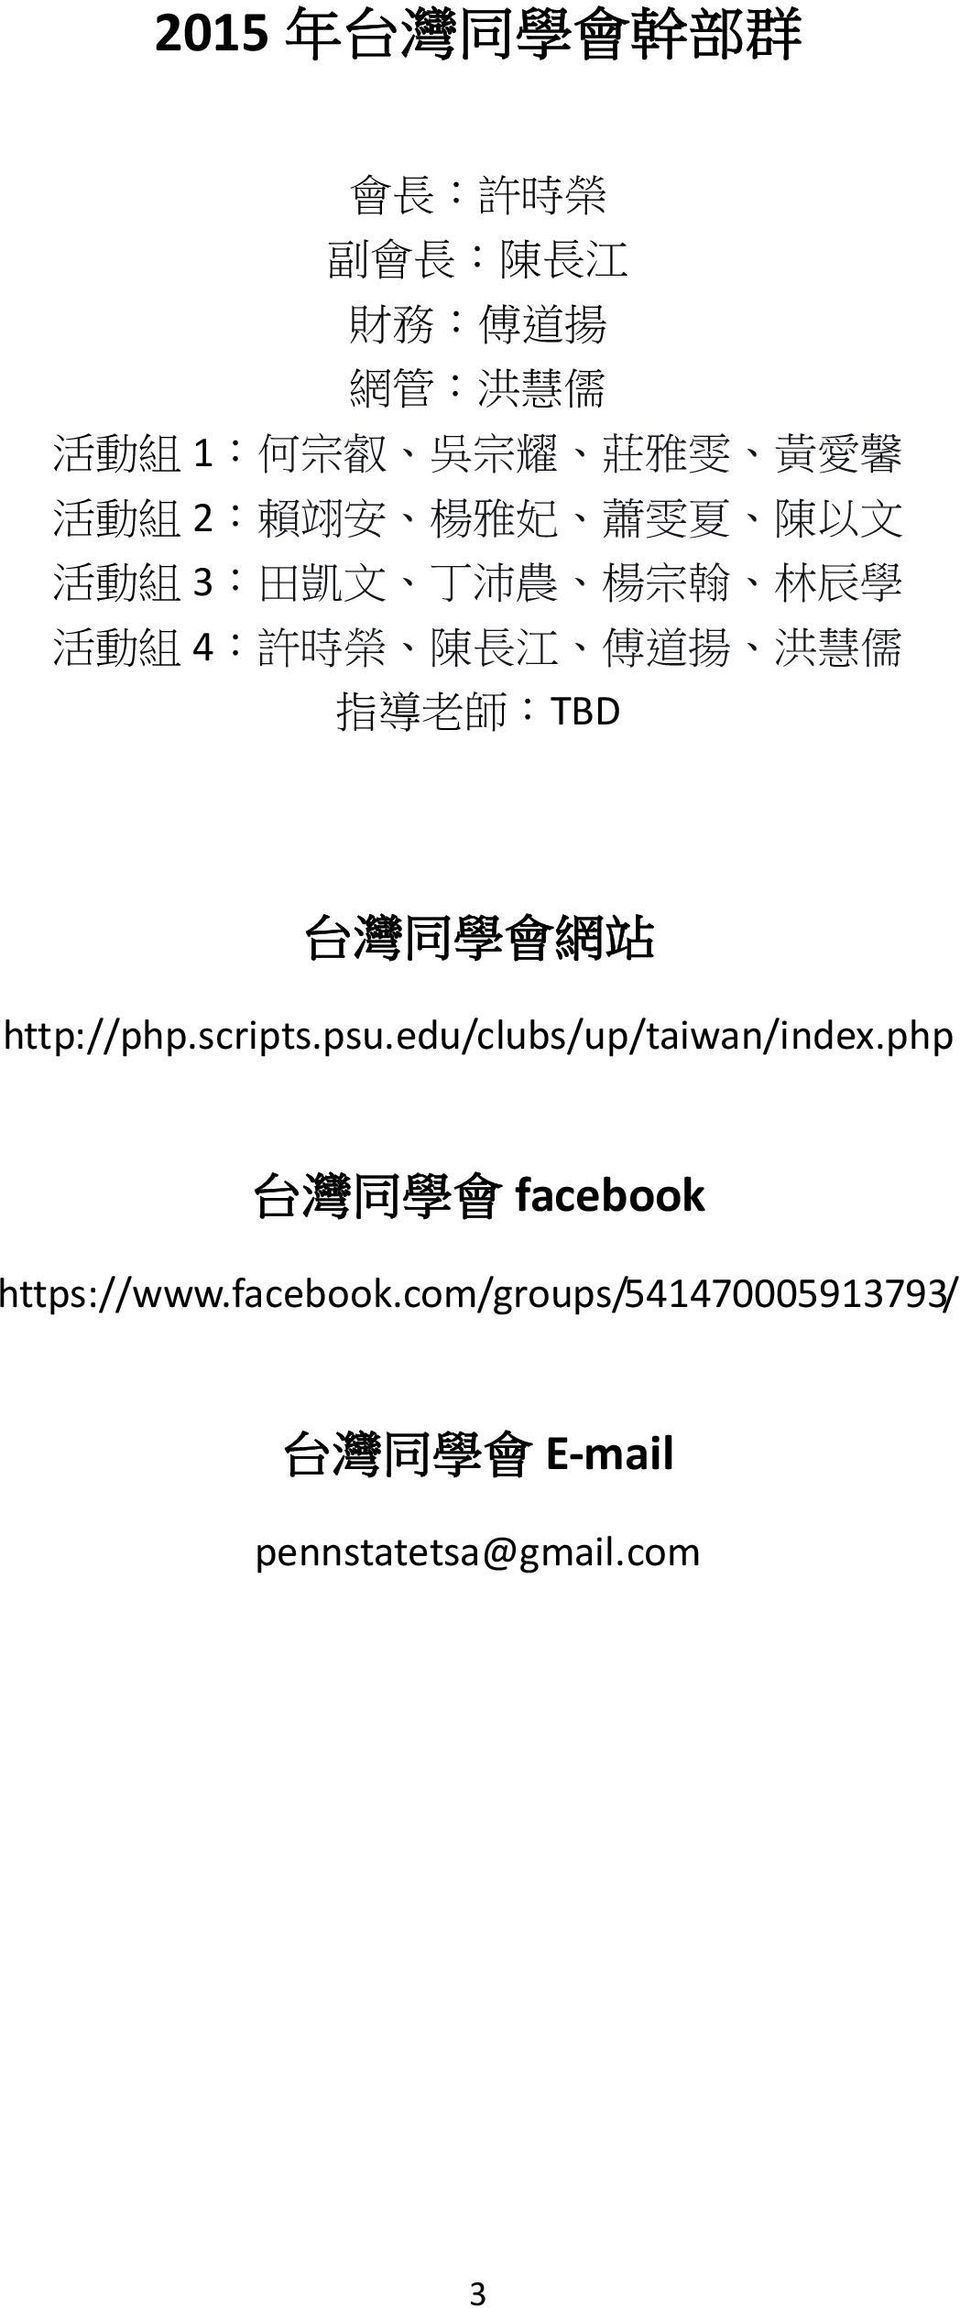 揚 洪 慧 儒 指 導 老 師 :TBD 台 灣 同 學 會 網 站 http://php.scripts.psu.edu/clubs/up/taiwan/index.